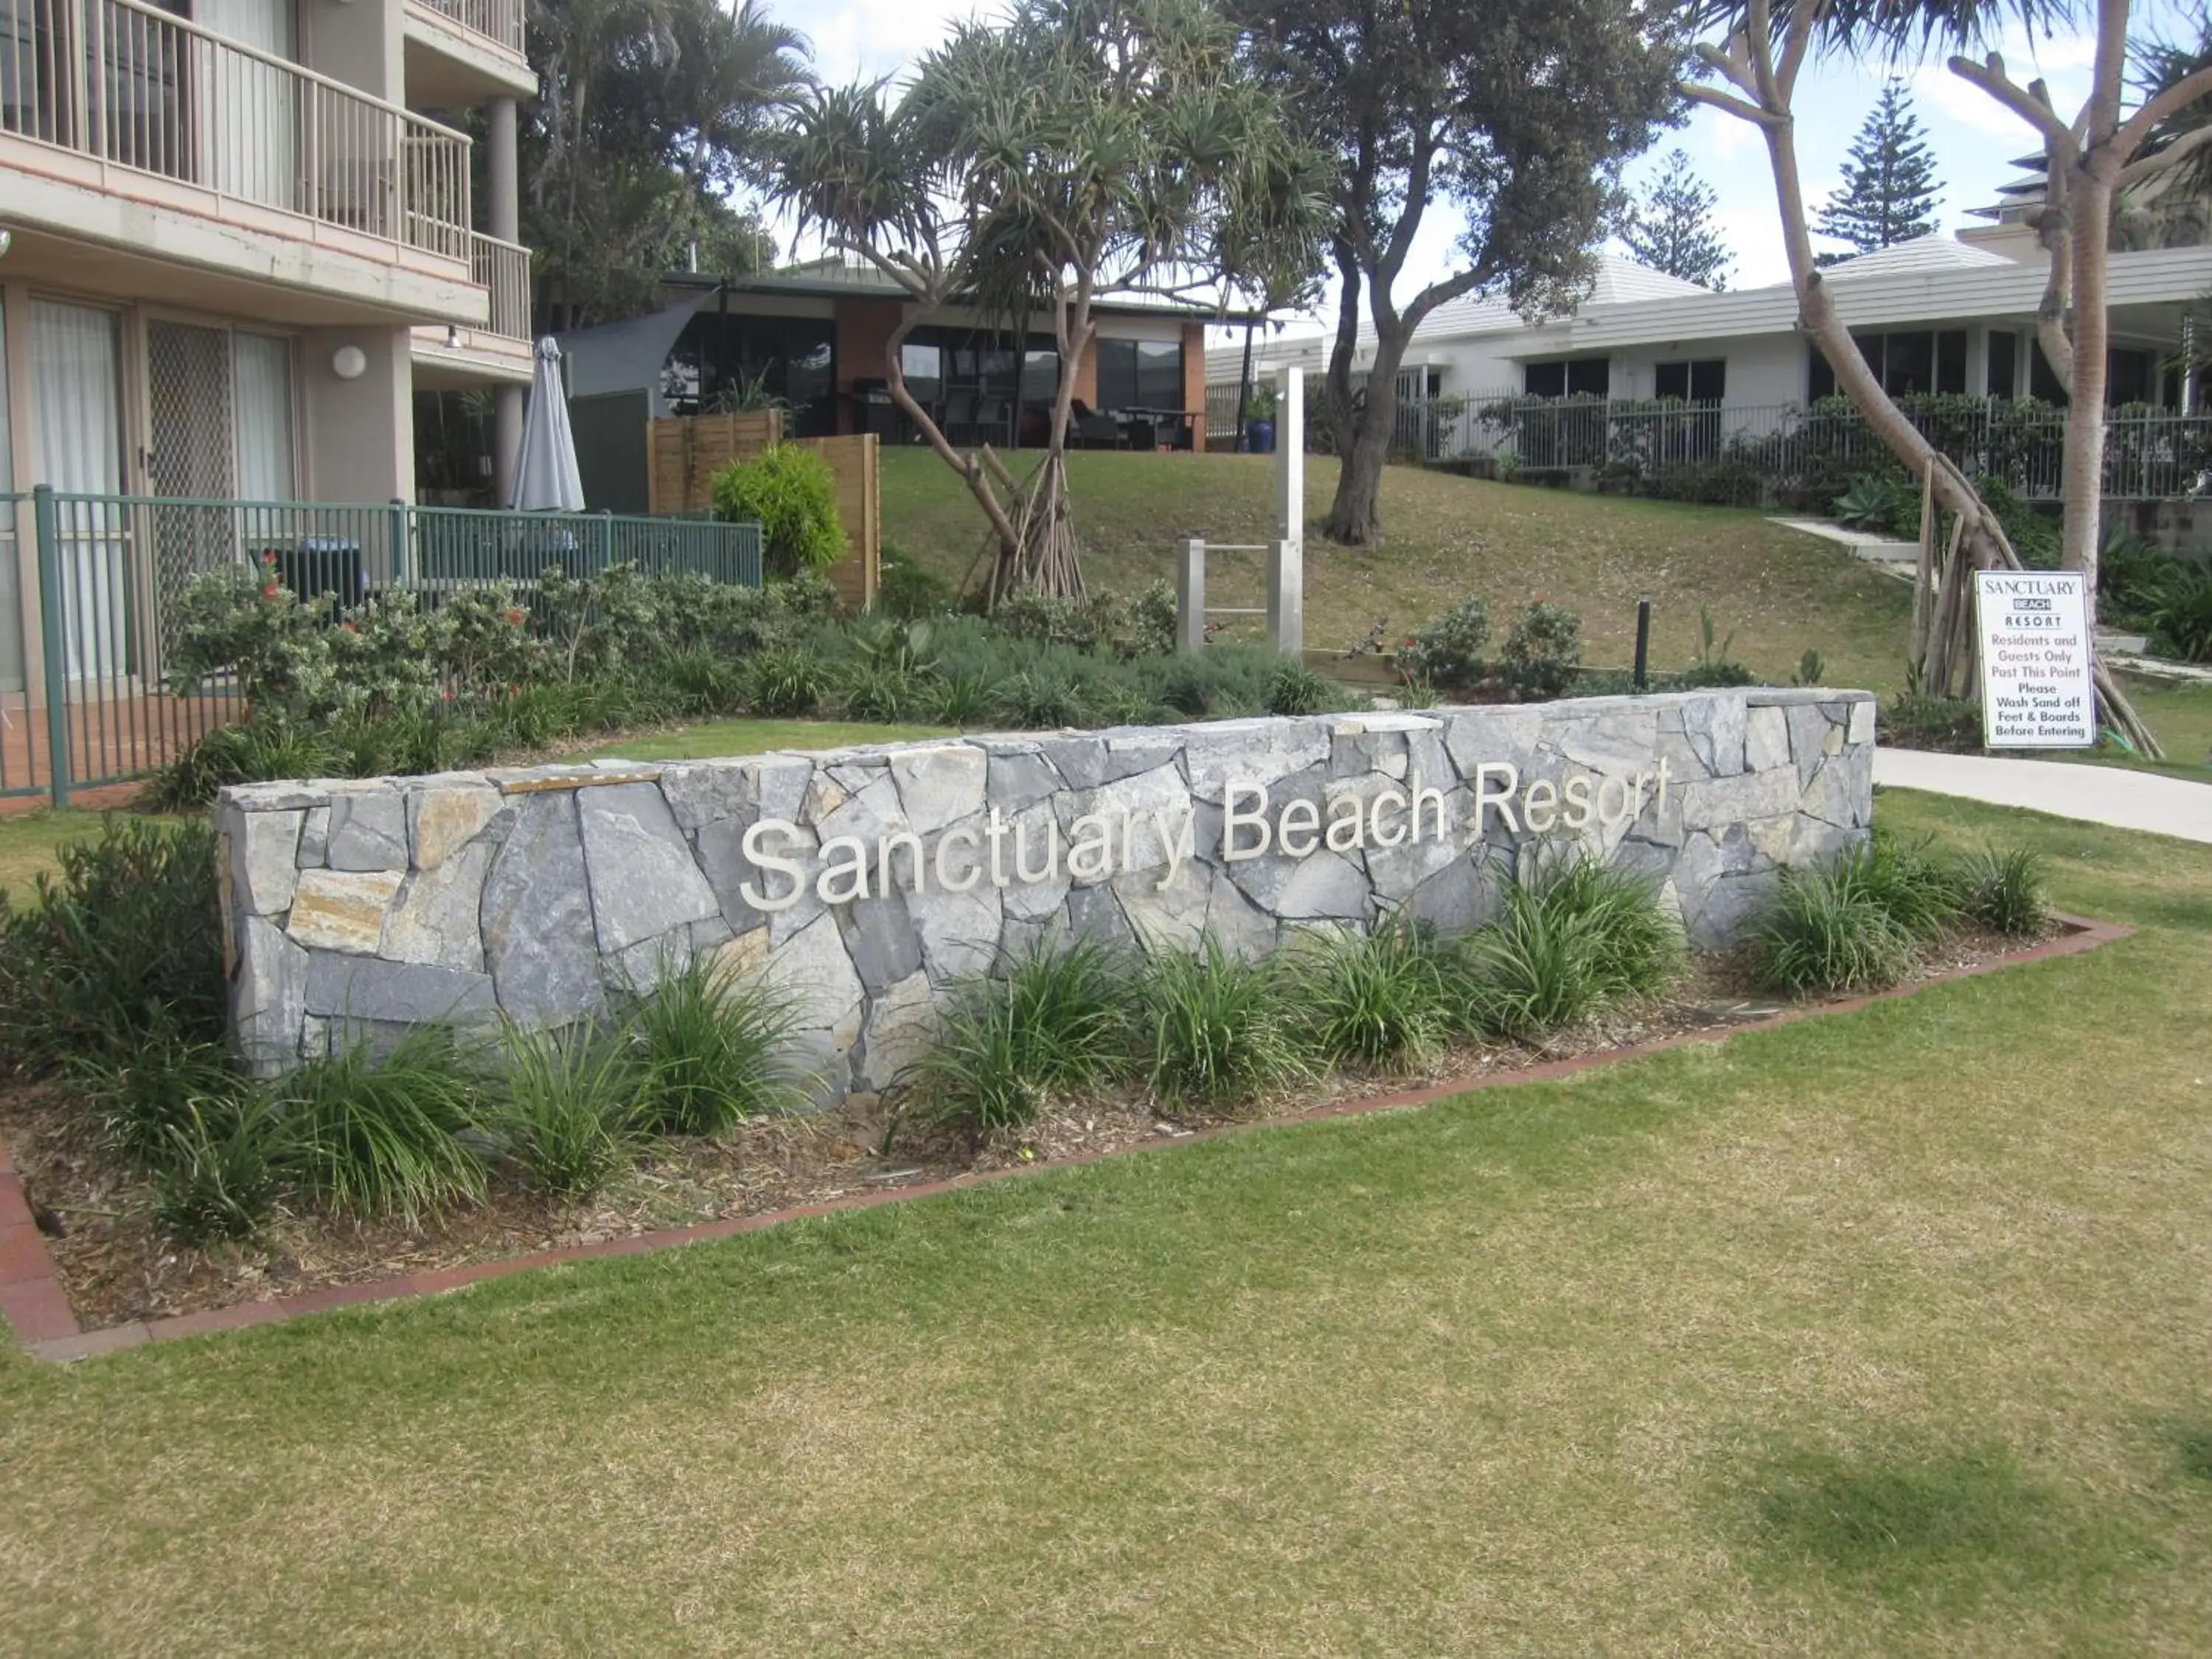 Property building, Garden in Sanctuary Beach Resort